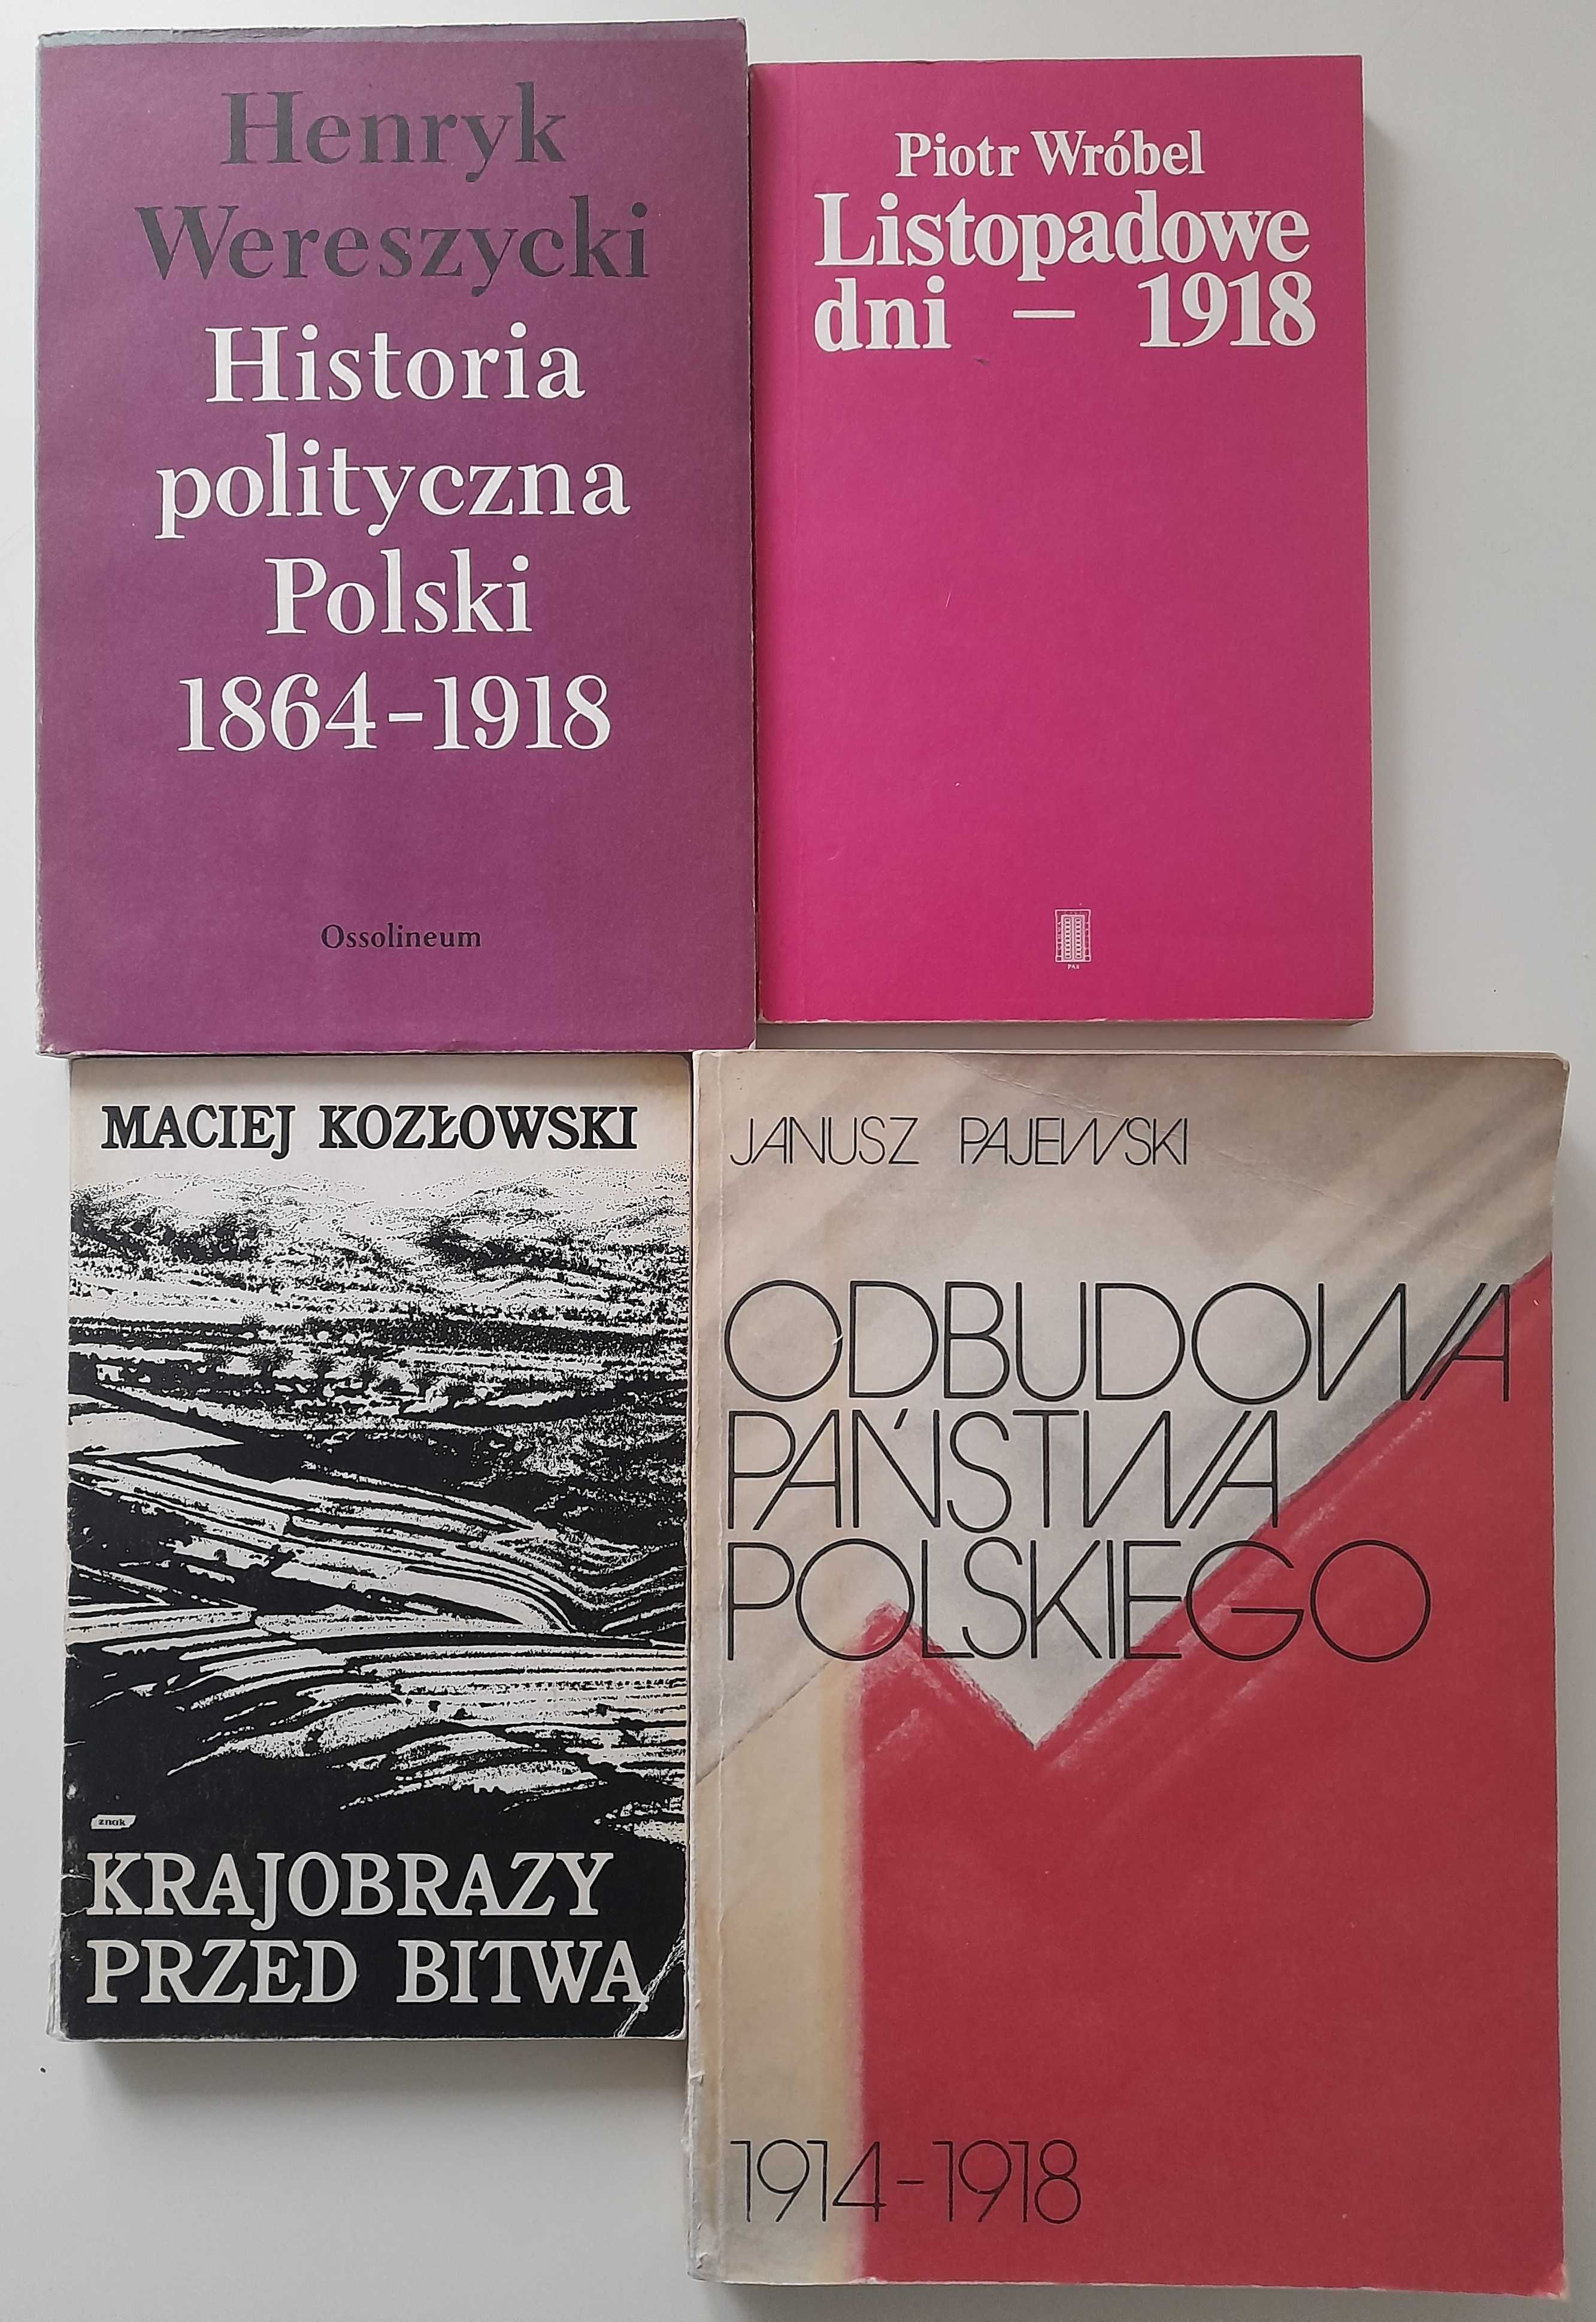 Historia polityczna Polski 1864 - 1918 - H. Wereszycki + 3 książki